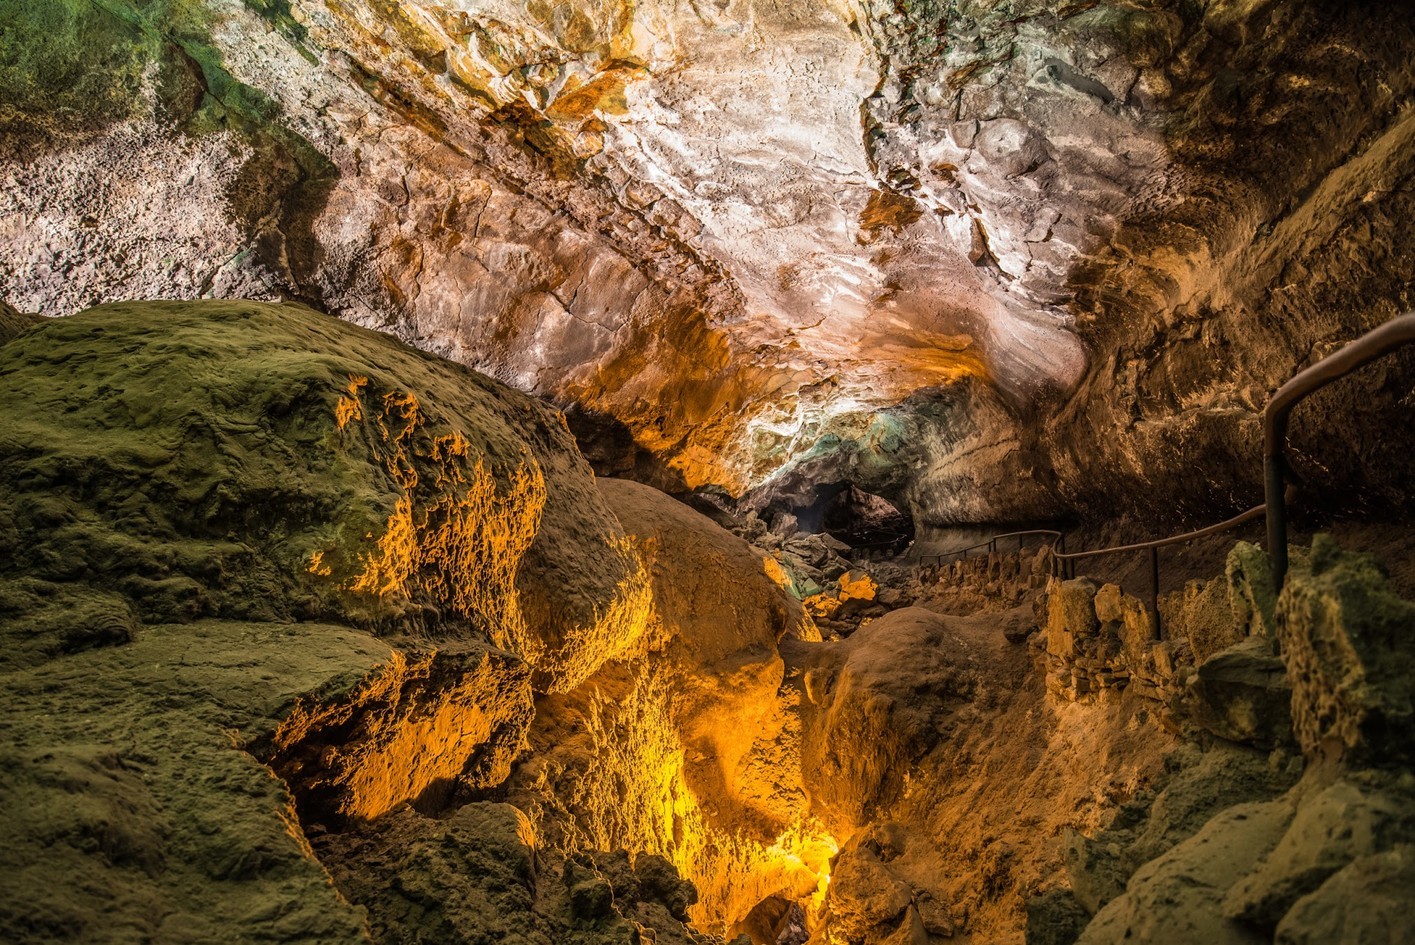 Cueva de los Verdes Cesar Manrique, the best things to do